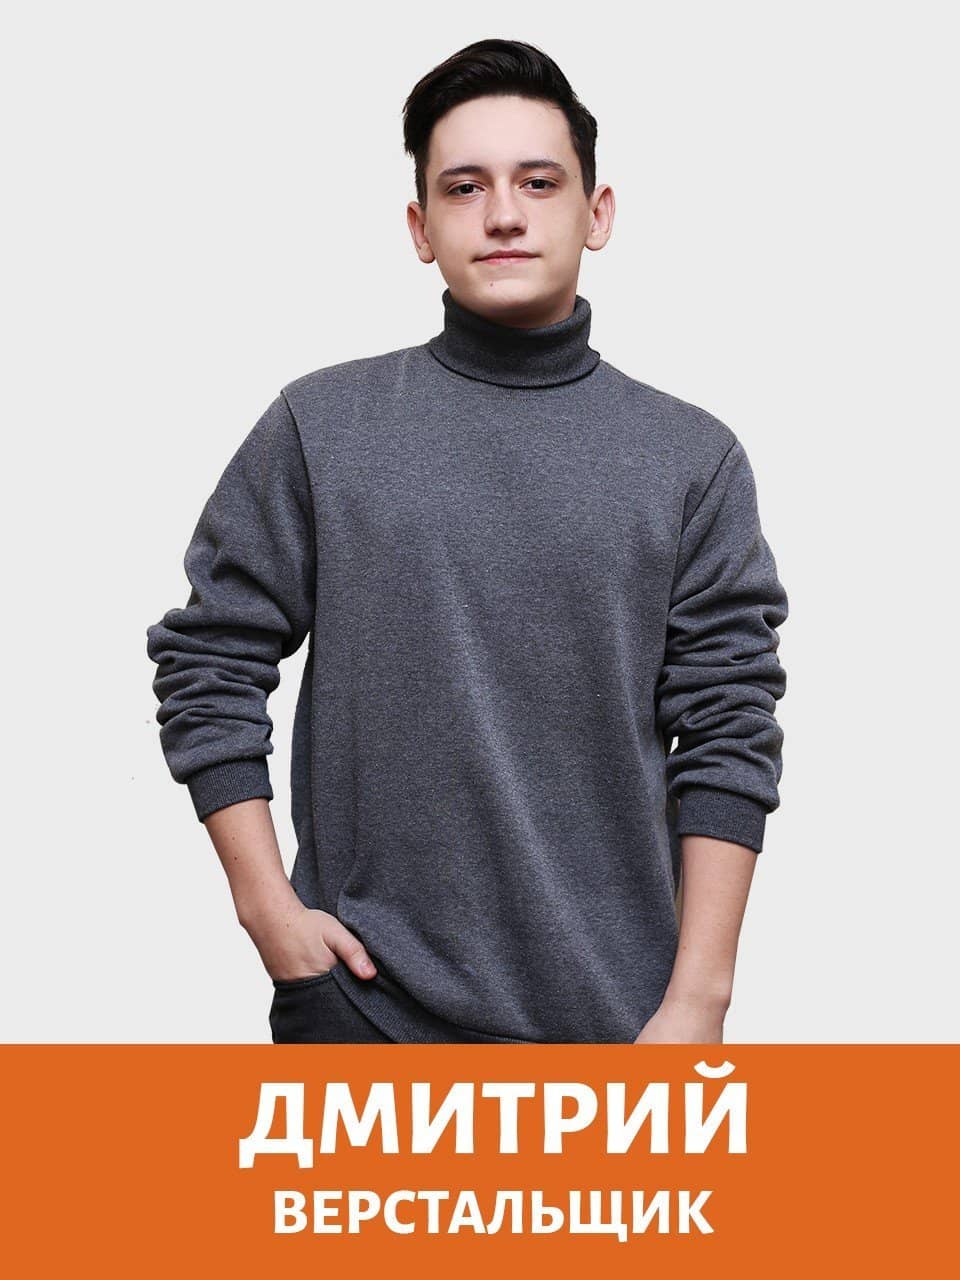 dmitrij verstalshhik - Создание сайтов в Атырау